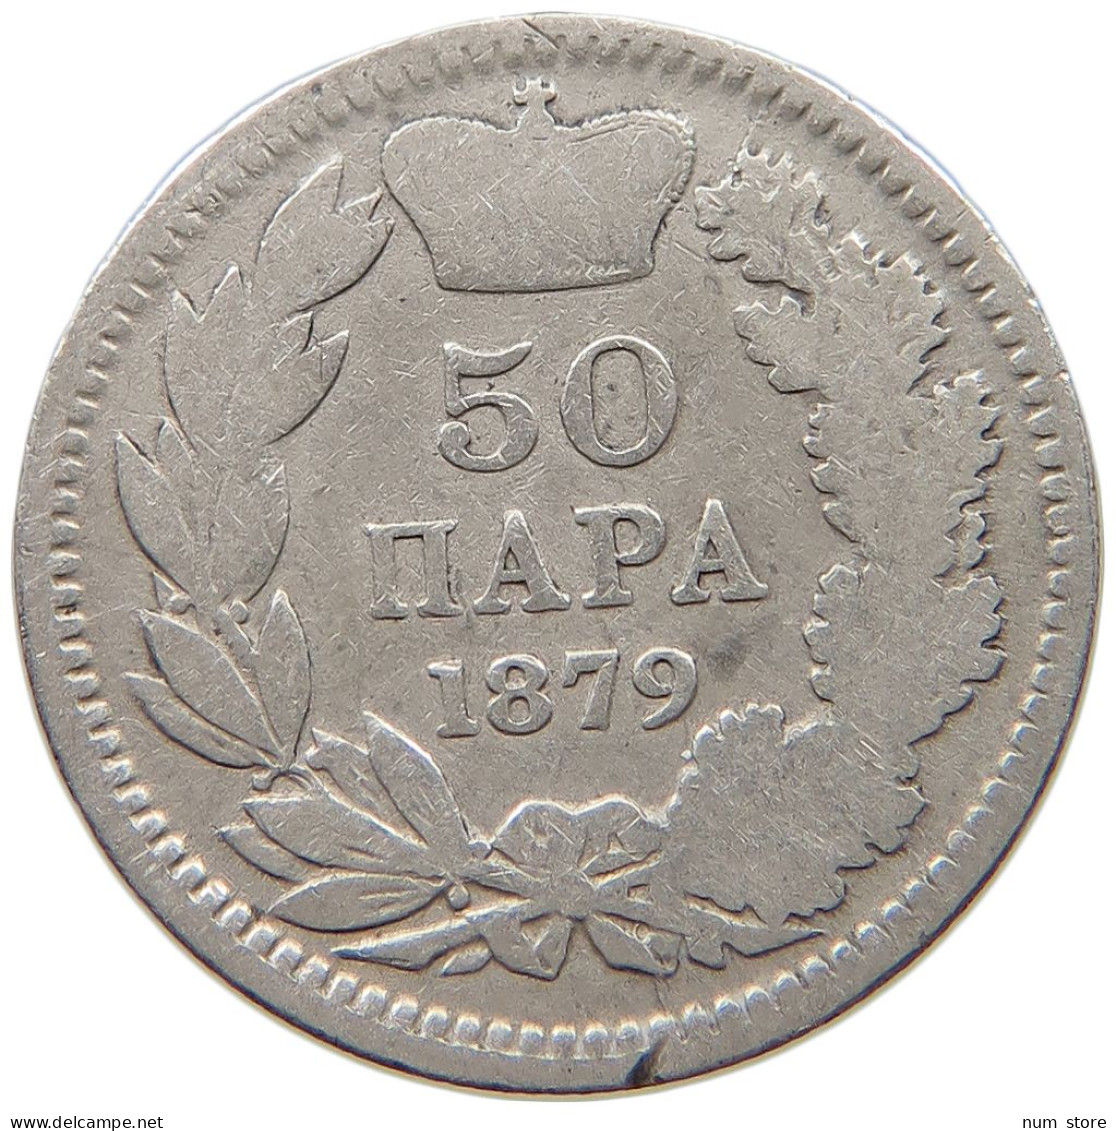 SERBIA 50 PARA 1879 Milan Obrenovic IV. (1868-1882) #c040 0457 - Serbien